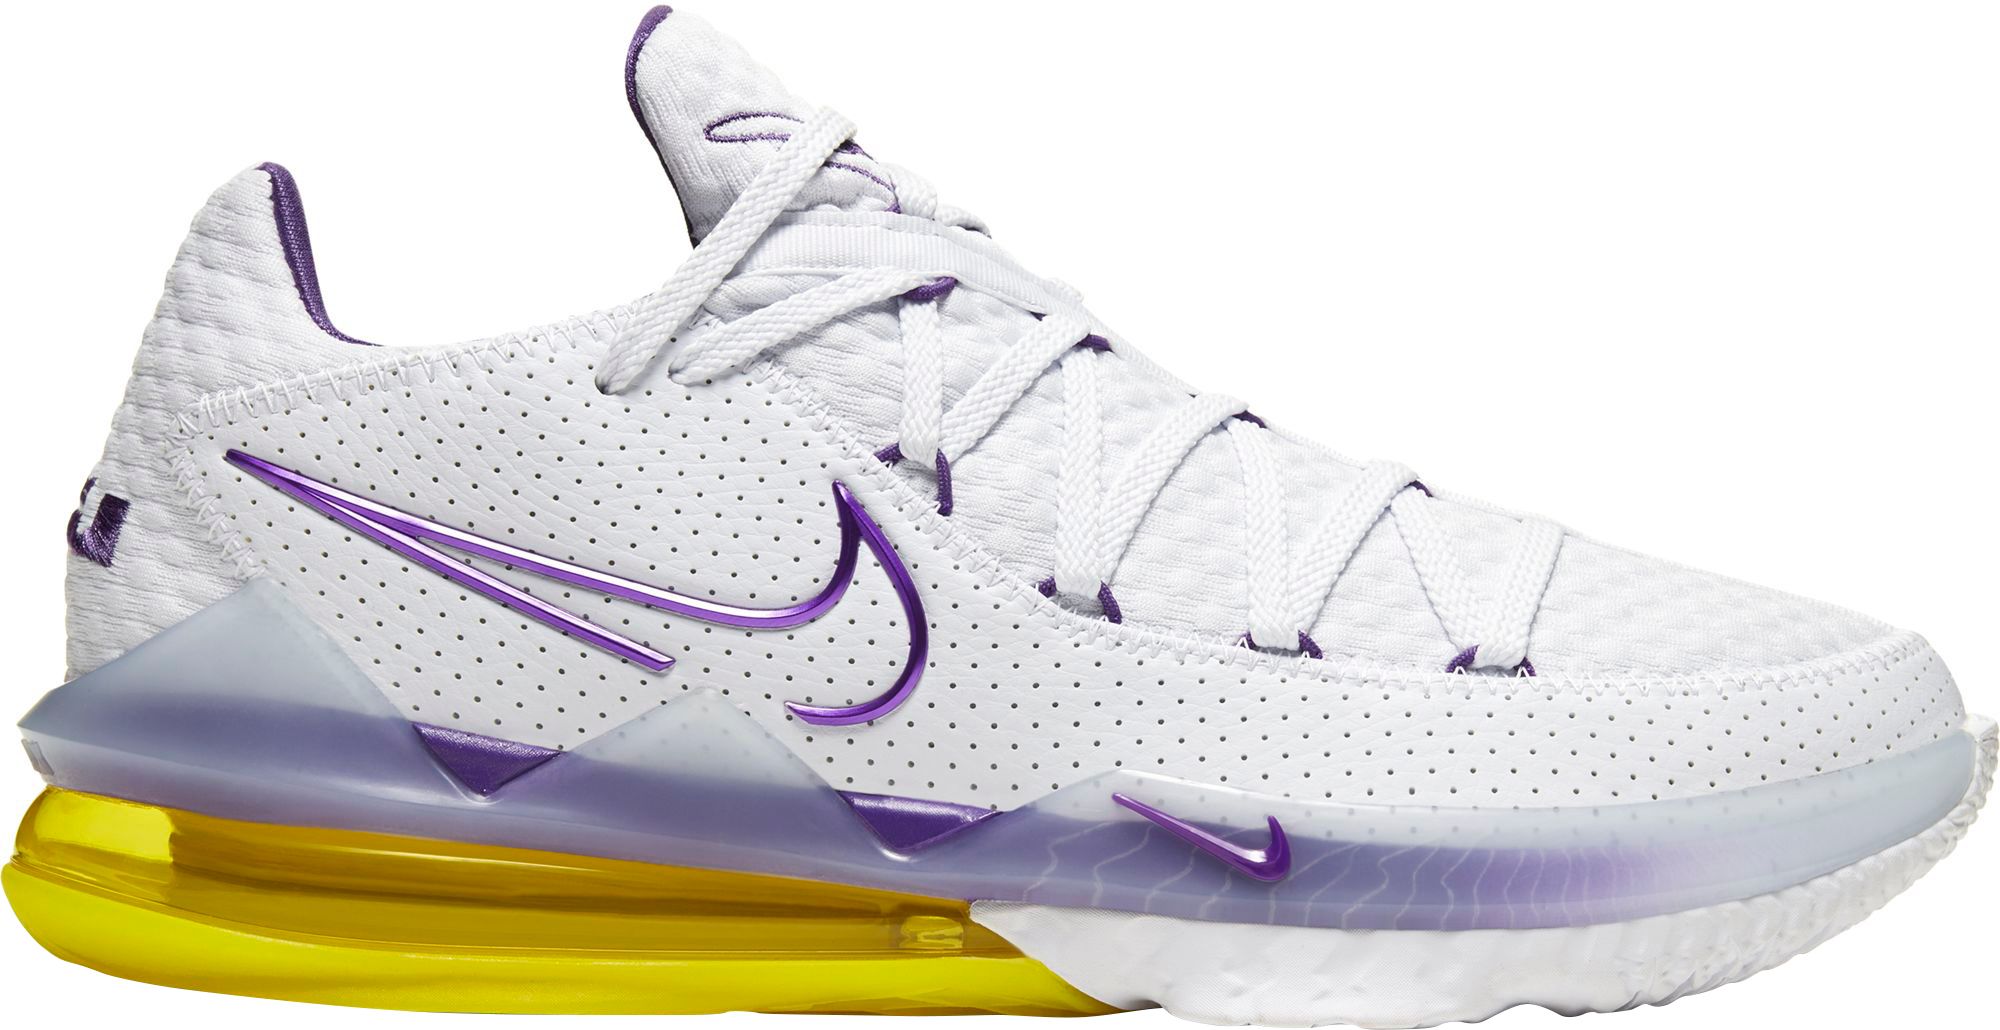 Nike LeBron 17 Low Basketball Shoes, Men's, M18/W19.5, White/Purple/Yellow